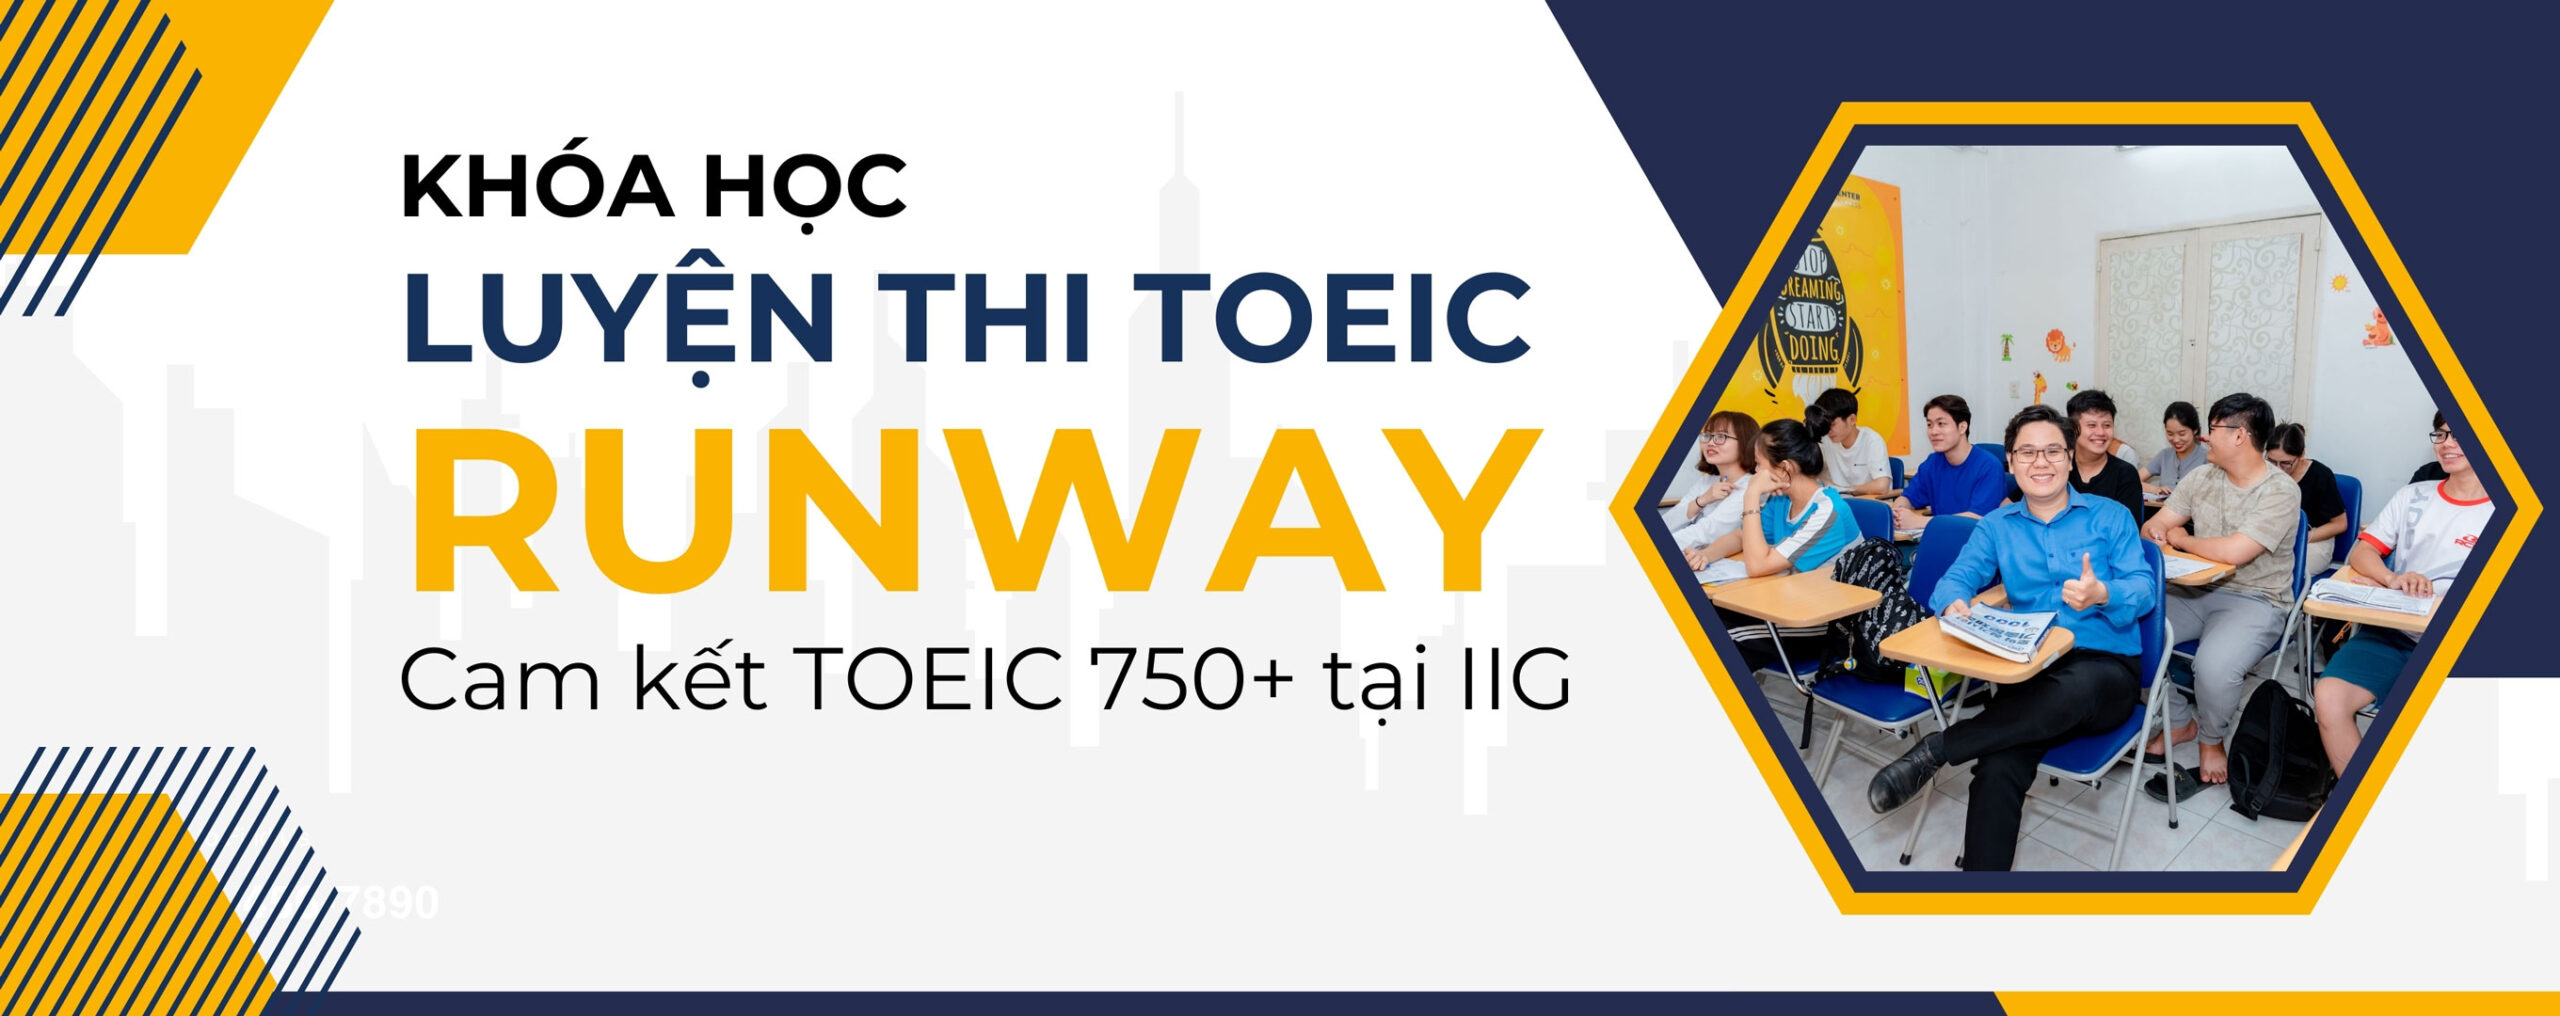 Khóa luyện thi TOEIC Runway cam kết đạt TOEIC 750